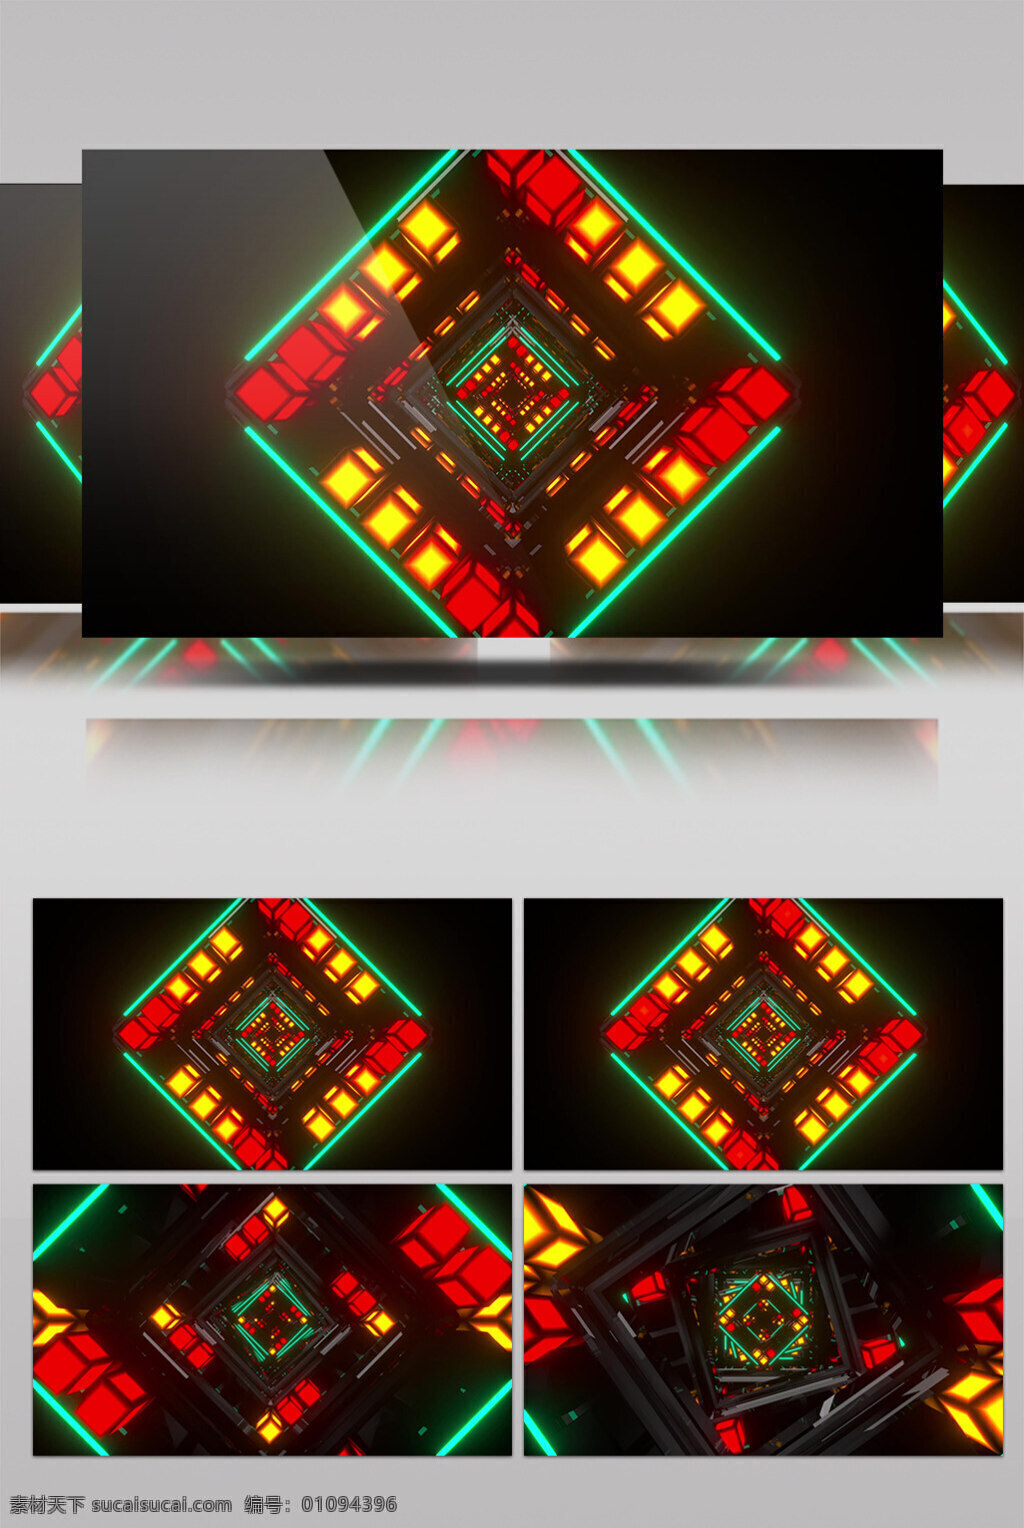 立方 光 阵 视频 光阵 立方体 生活抽象 画面意境 动态抽象 高清视频素材